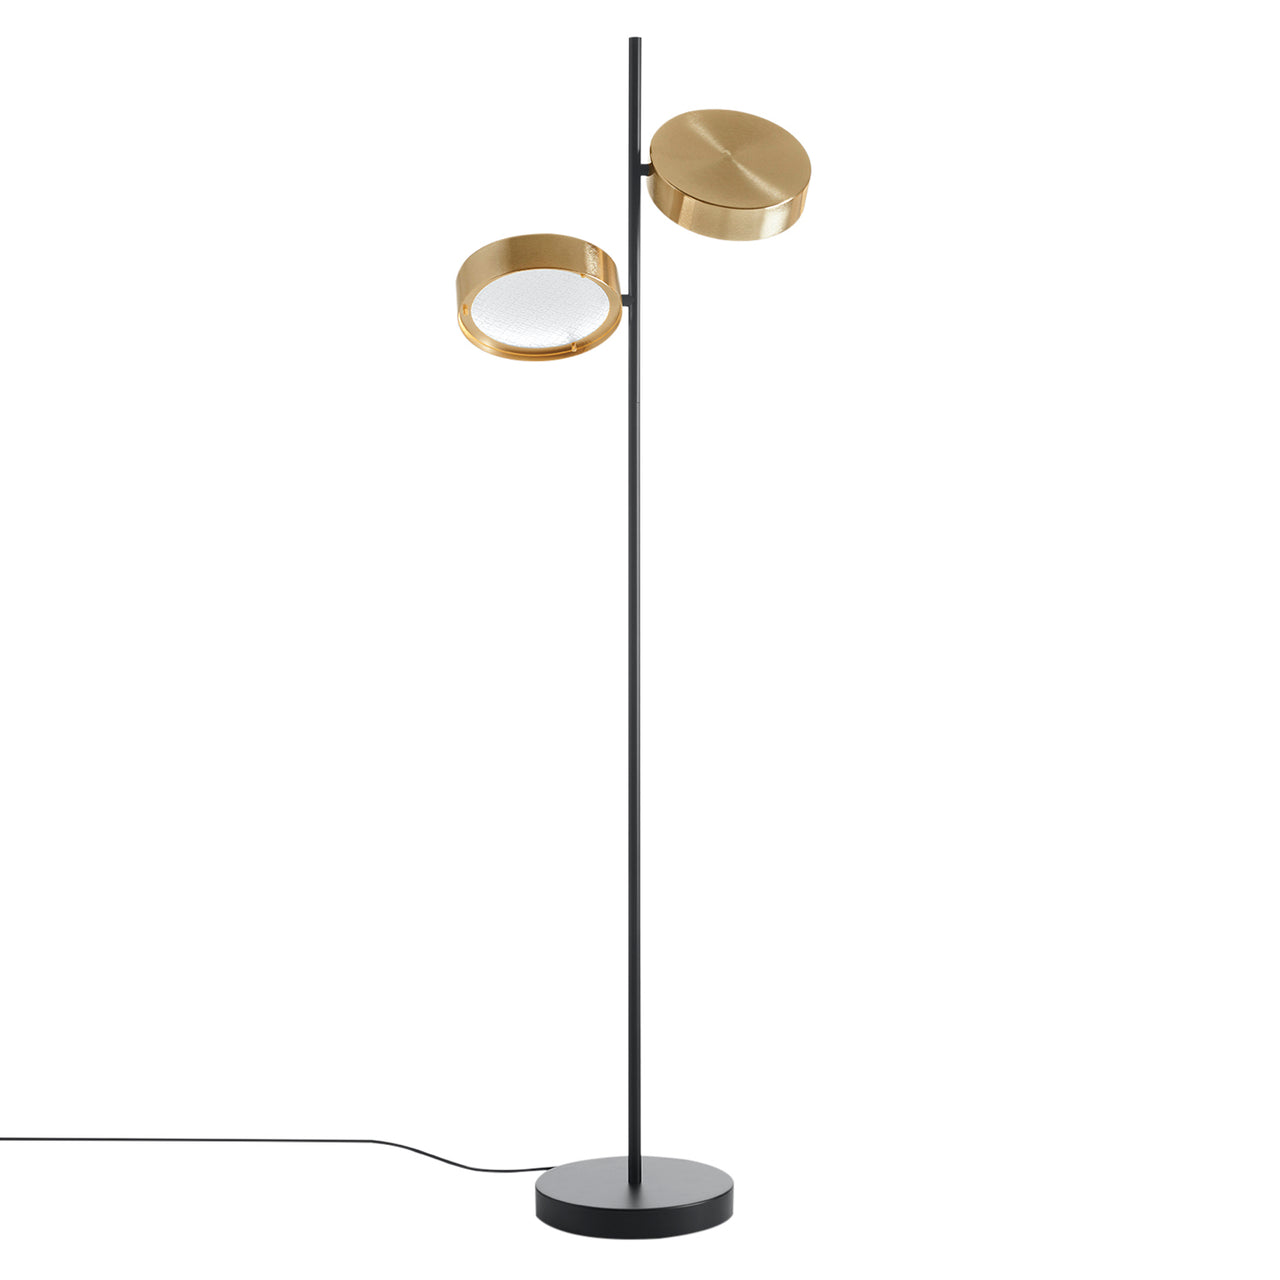 Berlin Floor Lamp: Anodized Brass